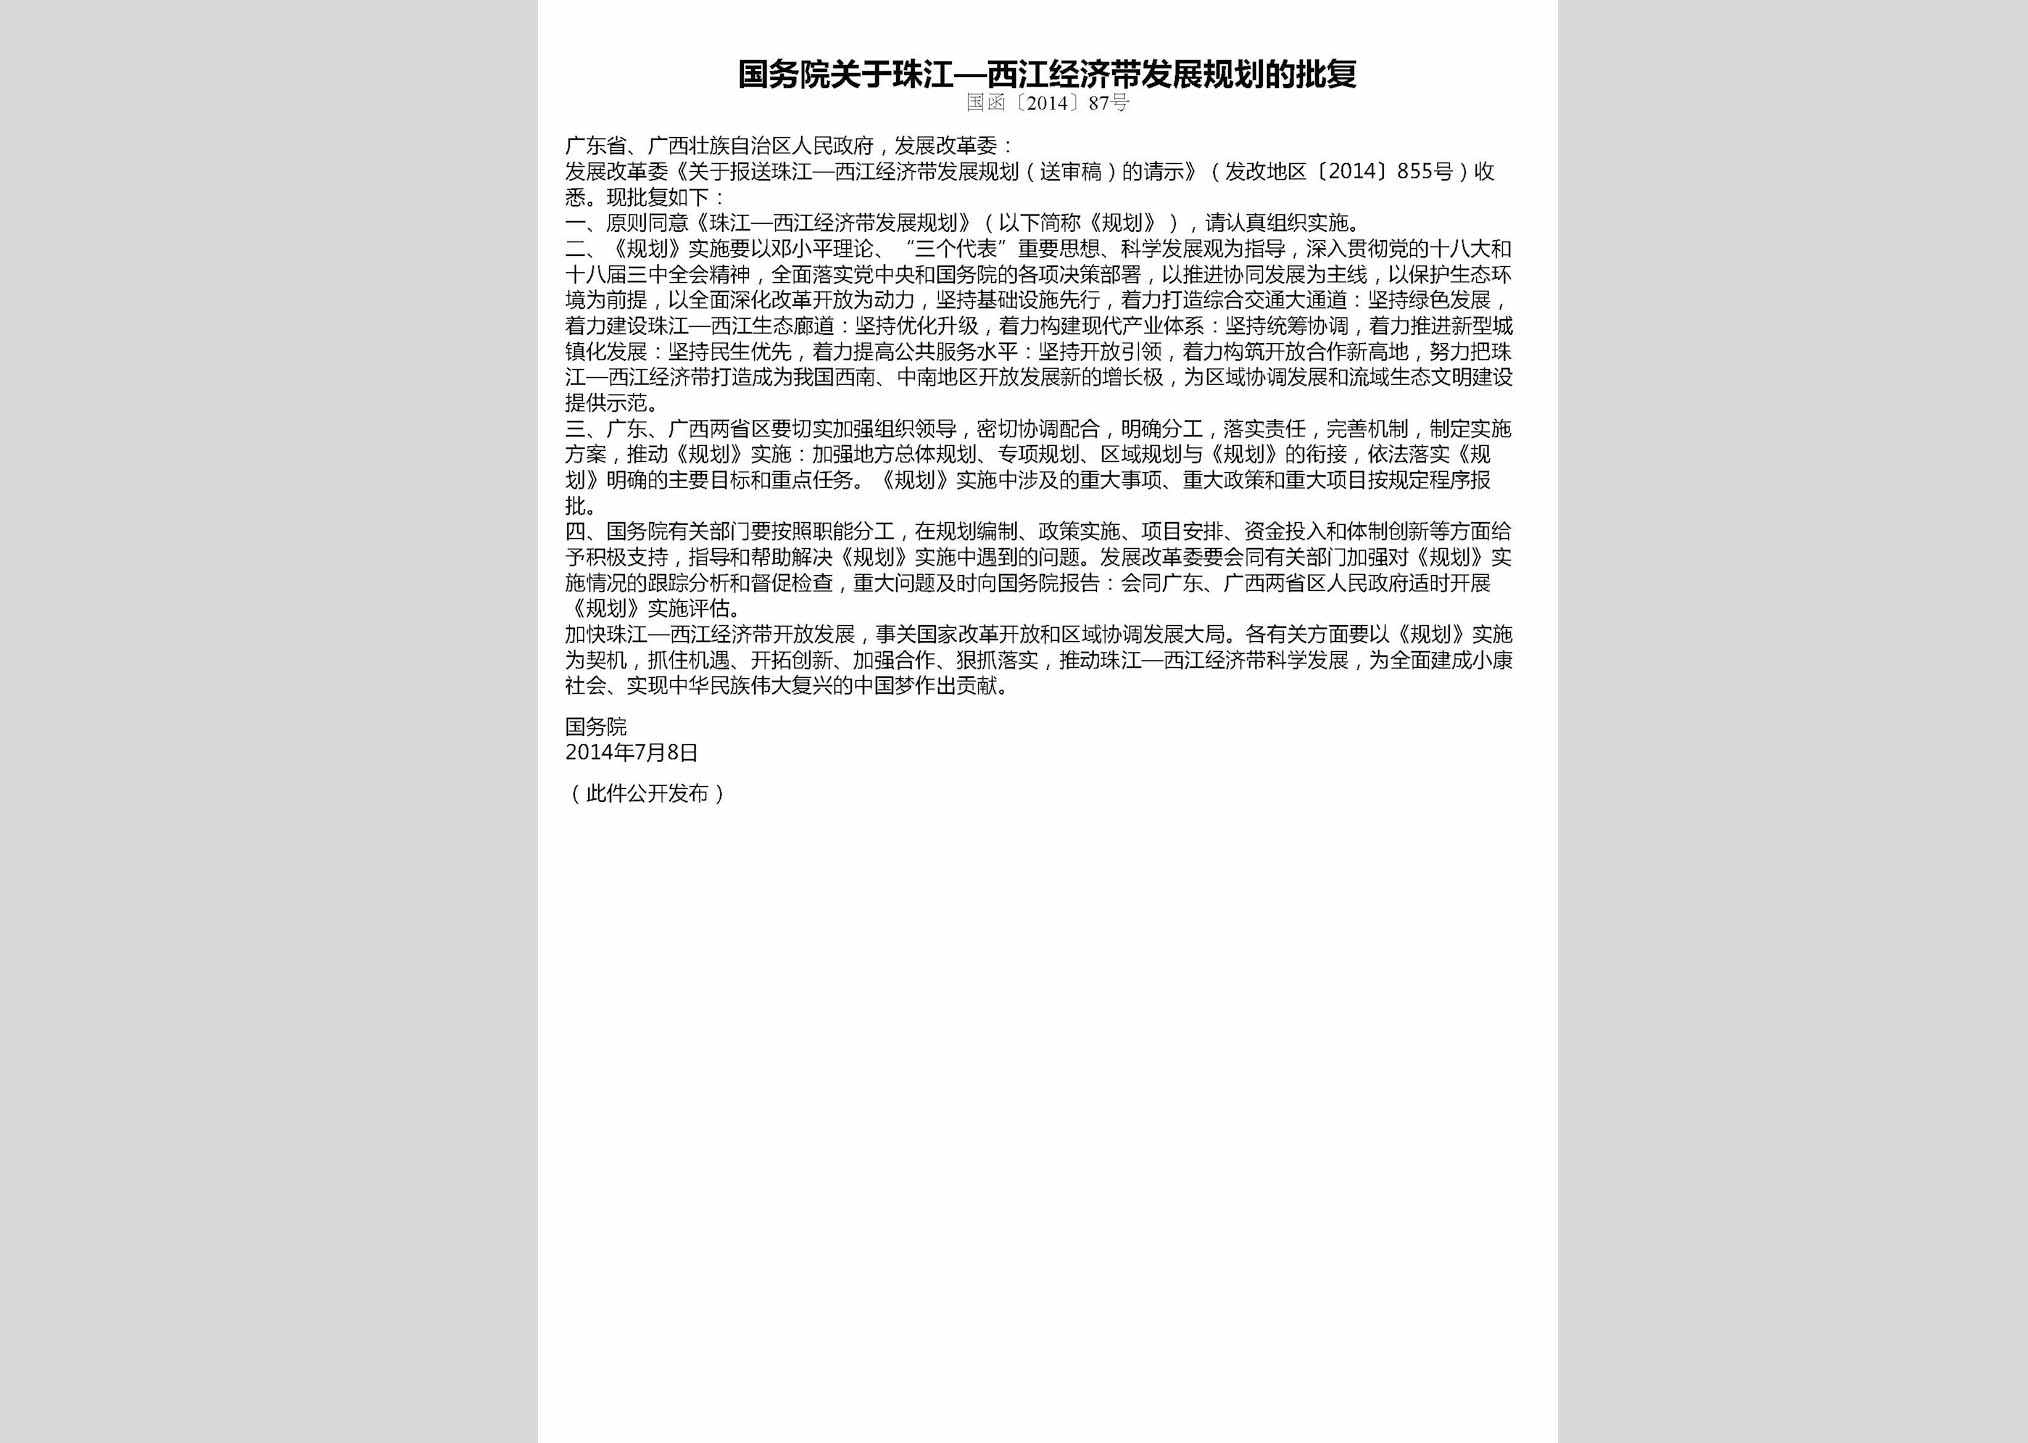 国函[2014]87号：国务院关于珠江—西江经济带发展规划的批复